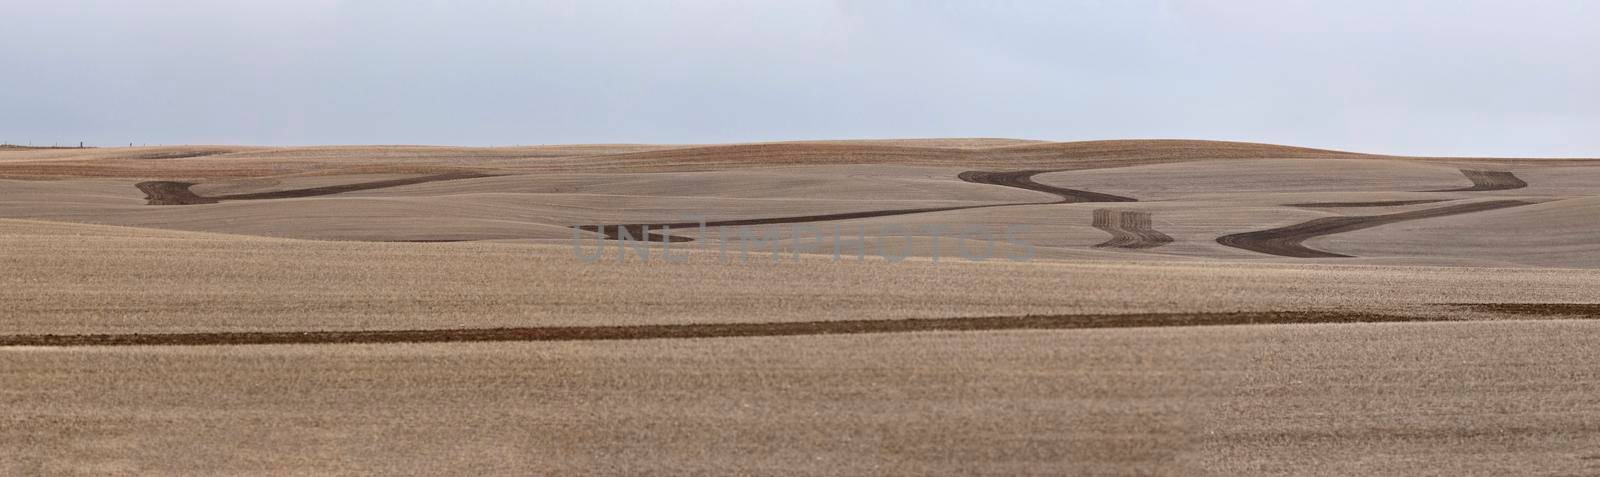 Design Field Saskatchewan by pictureguy